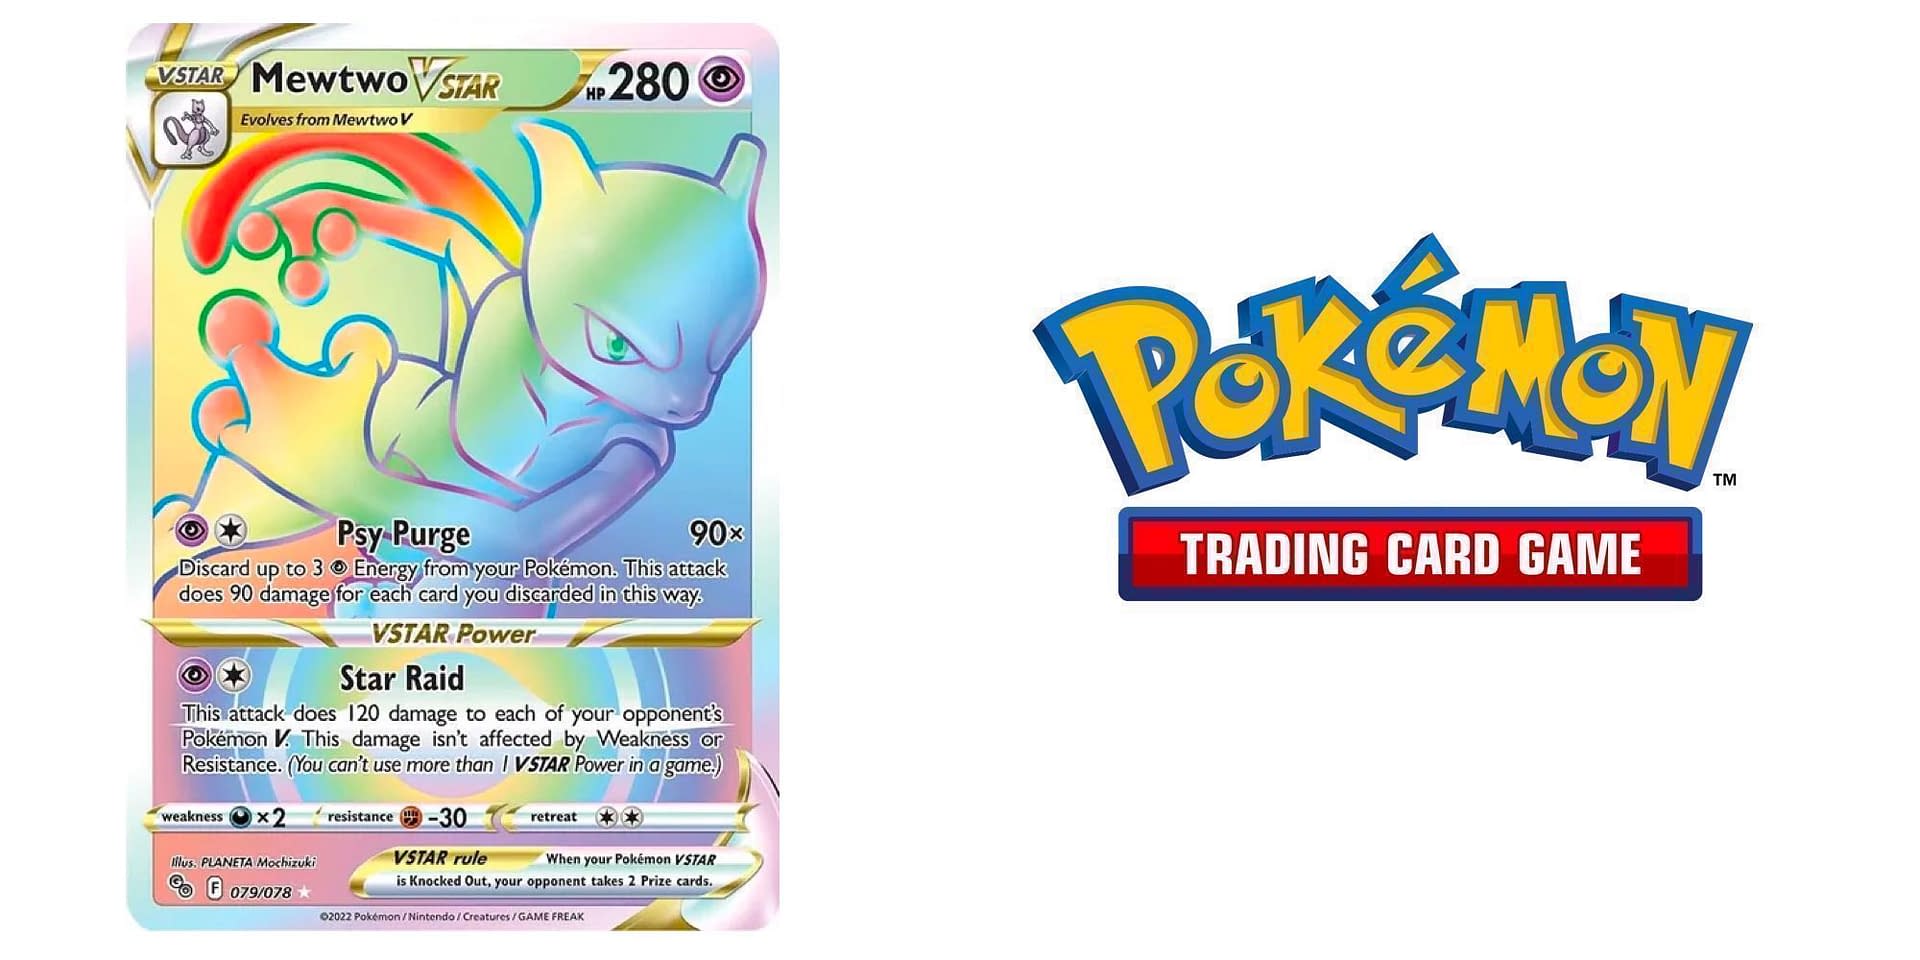 Mewtwo VSTAR (Pokémon GO 086/078) – TCG Collector